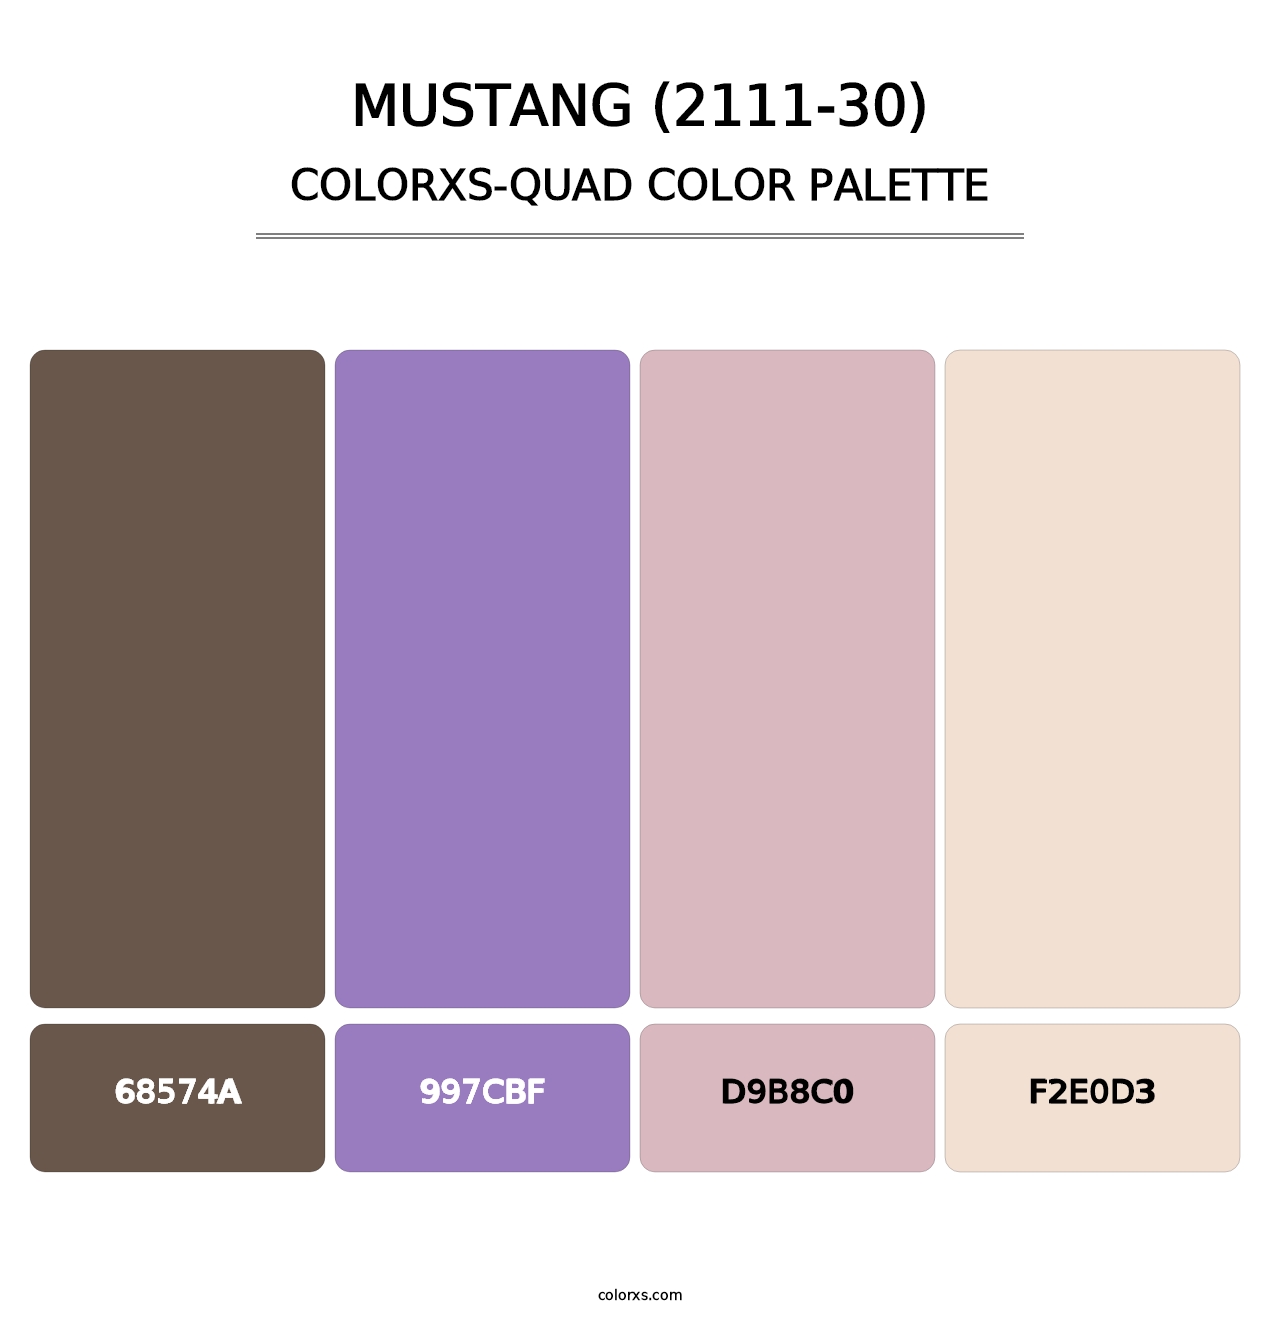 Mustang (2111-30) - Colorxs Quad Palette